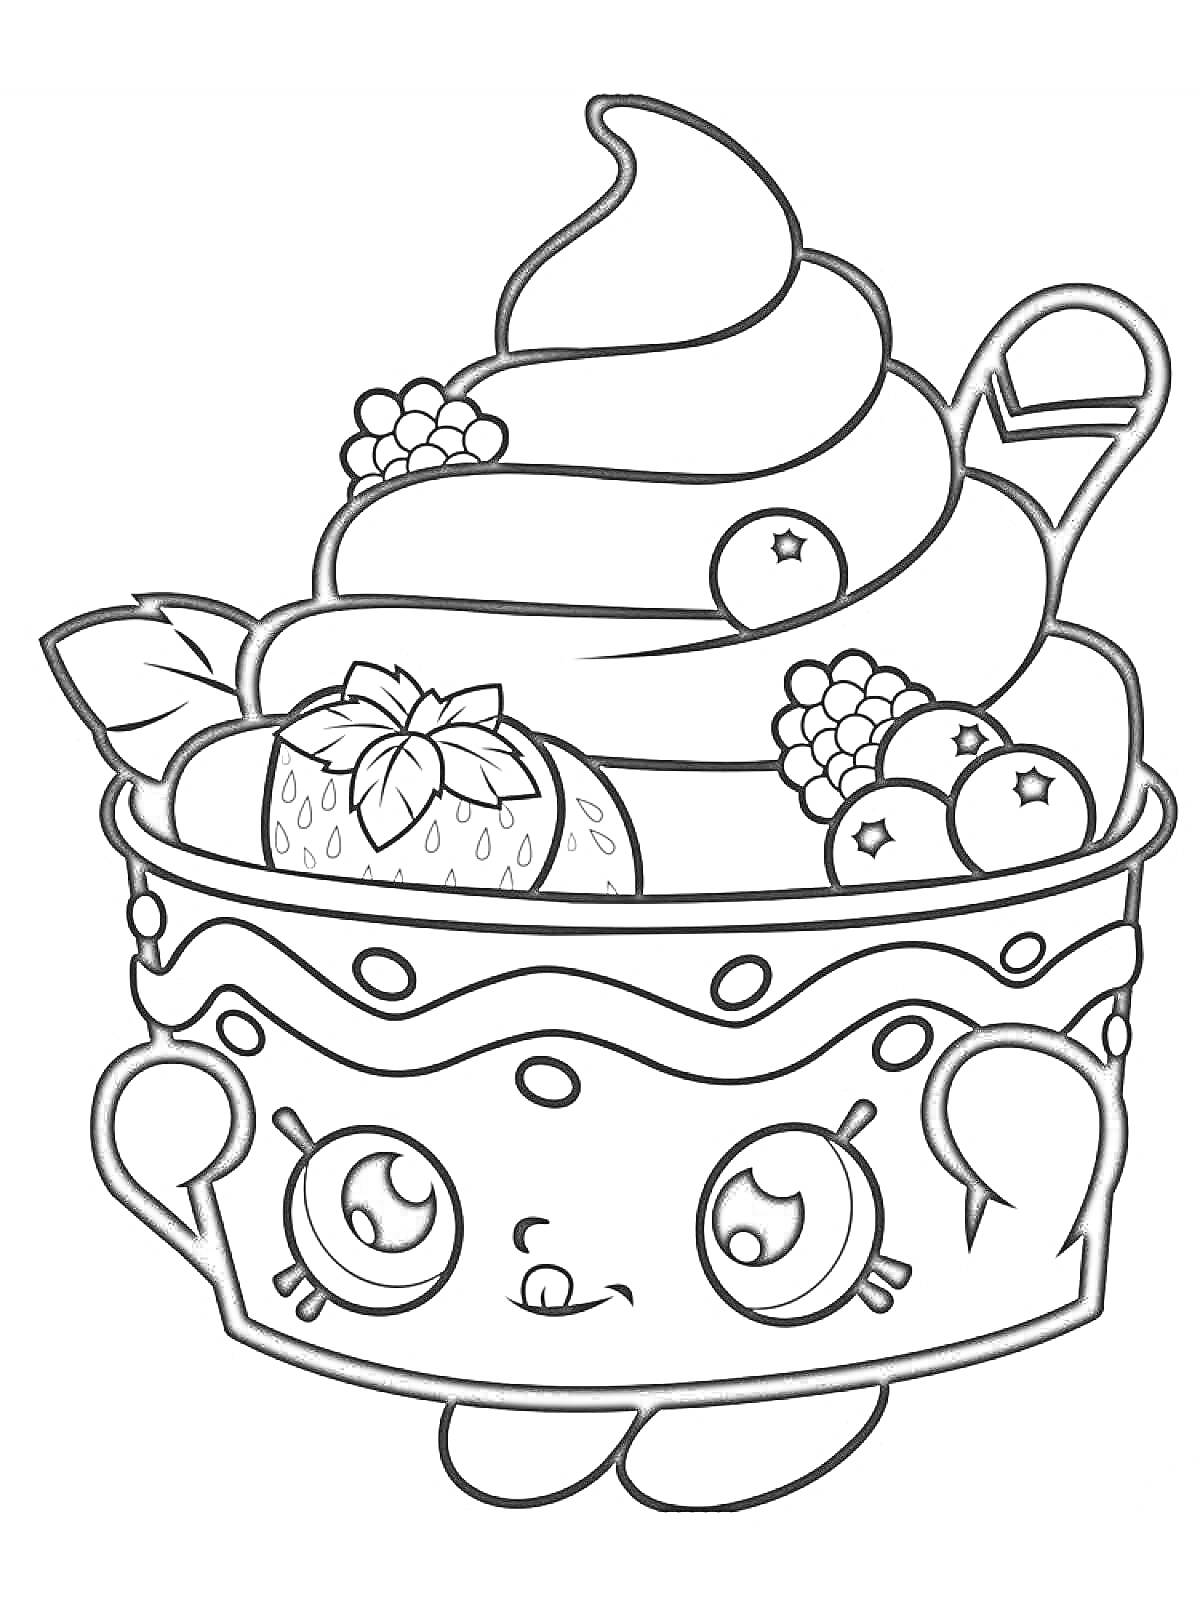 Рисунок с милым мороженым с глазками в миске, укрым ягодами (ежевикой и черникой), клубникой, листиком и вафлей